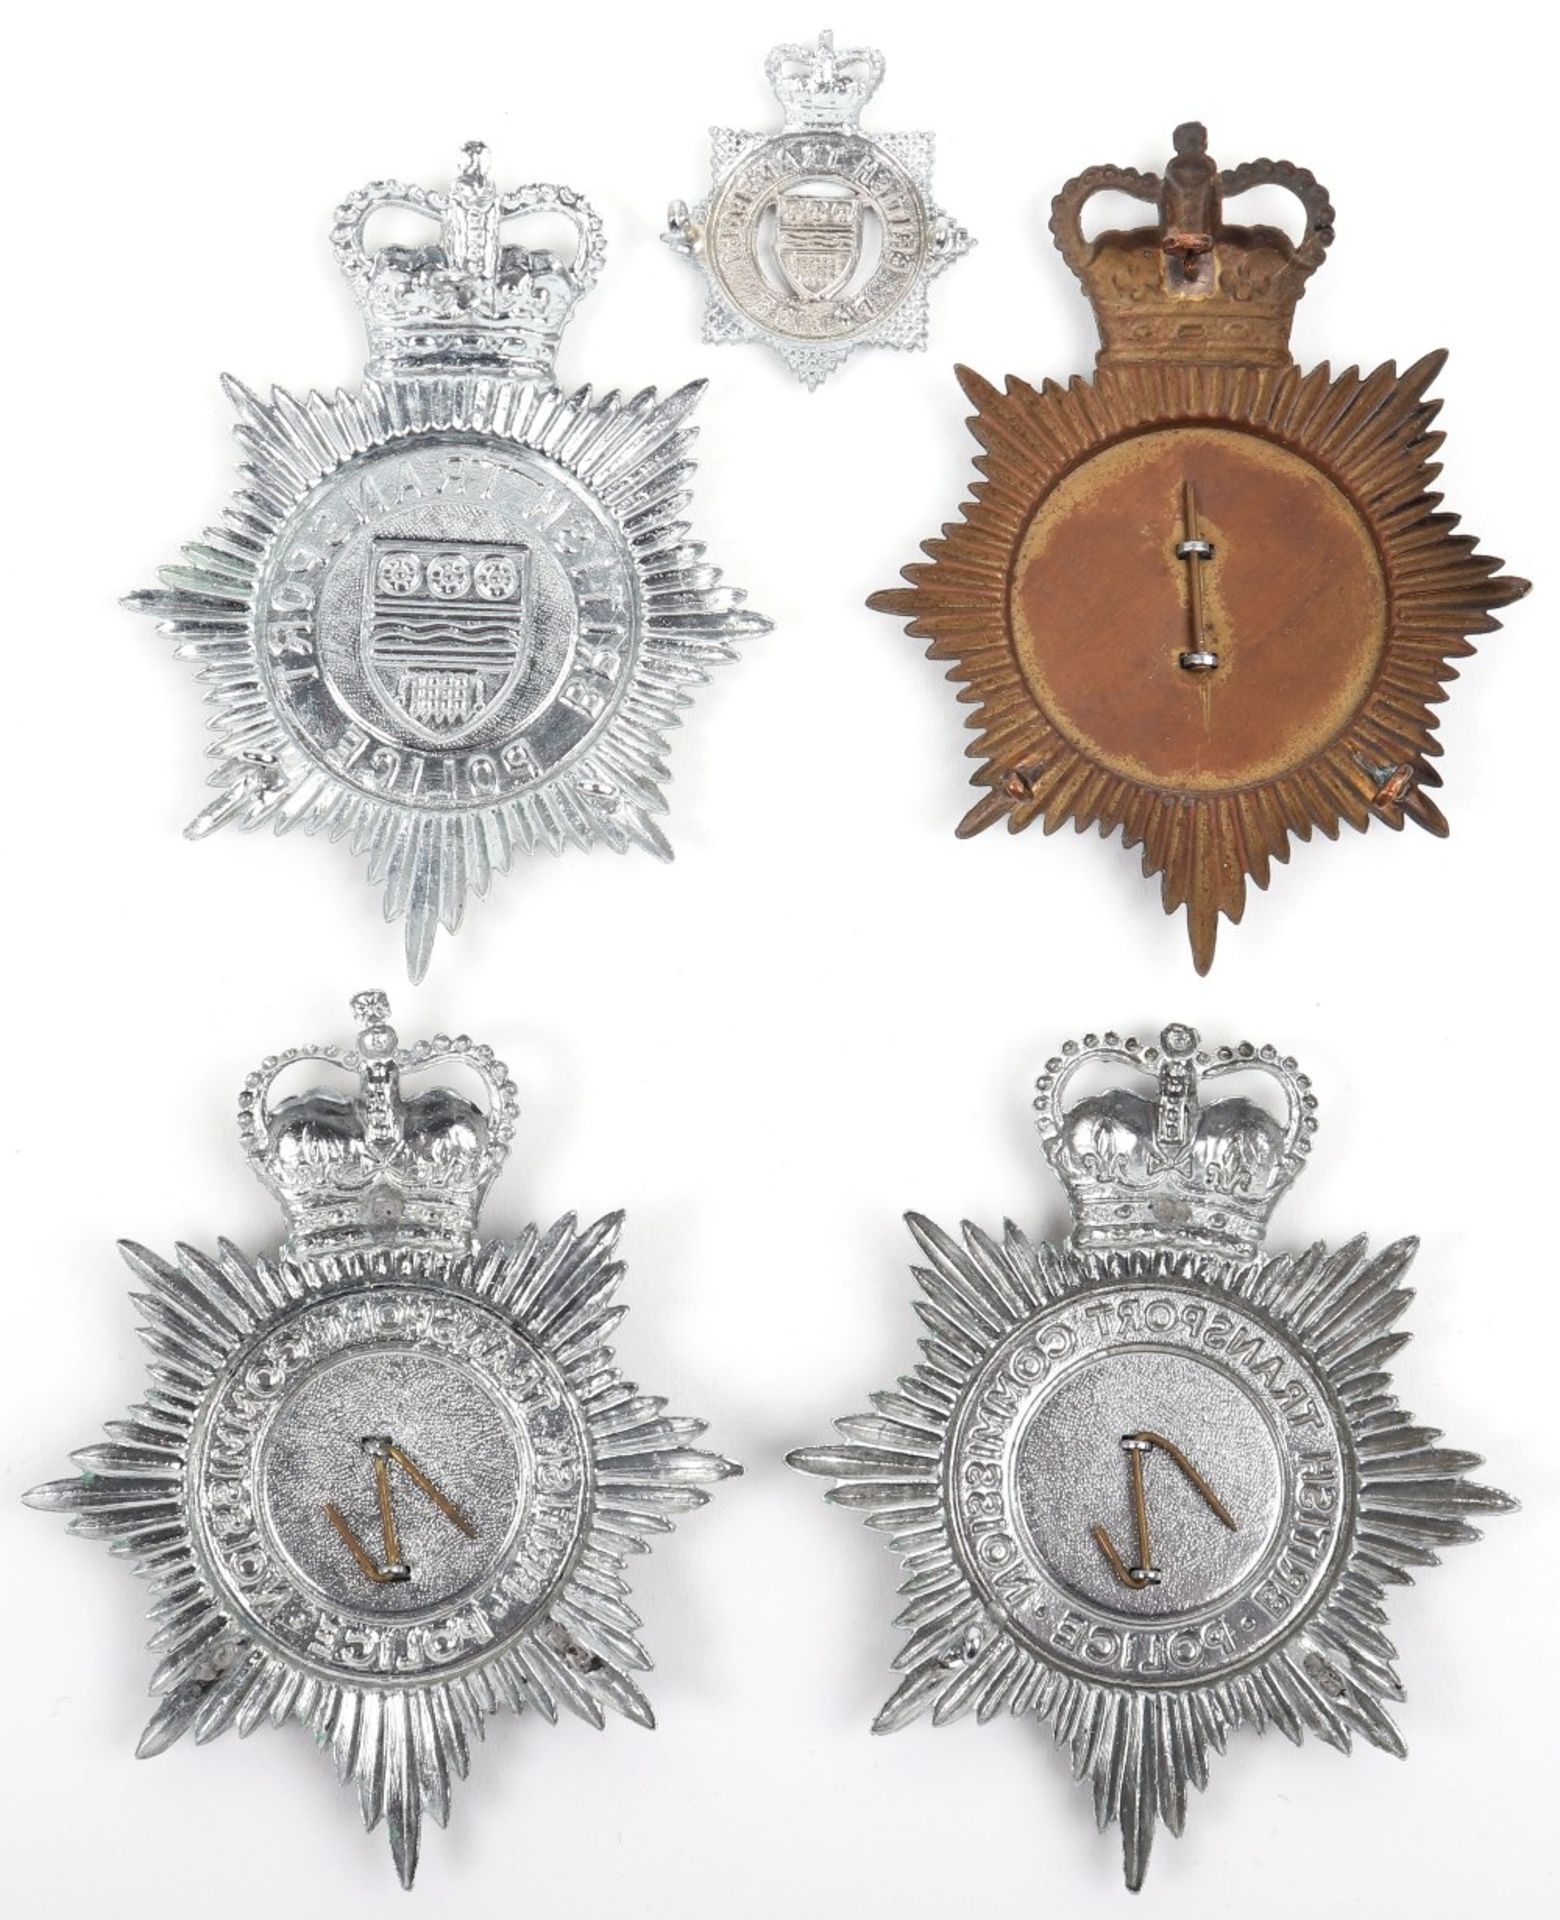 Obsolete British Transport Police Badges - Image 2 of 2